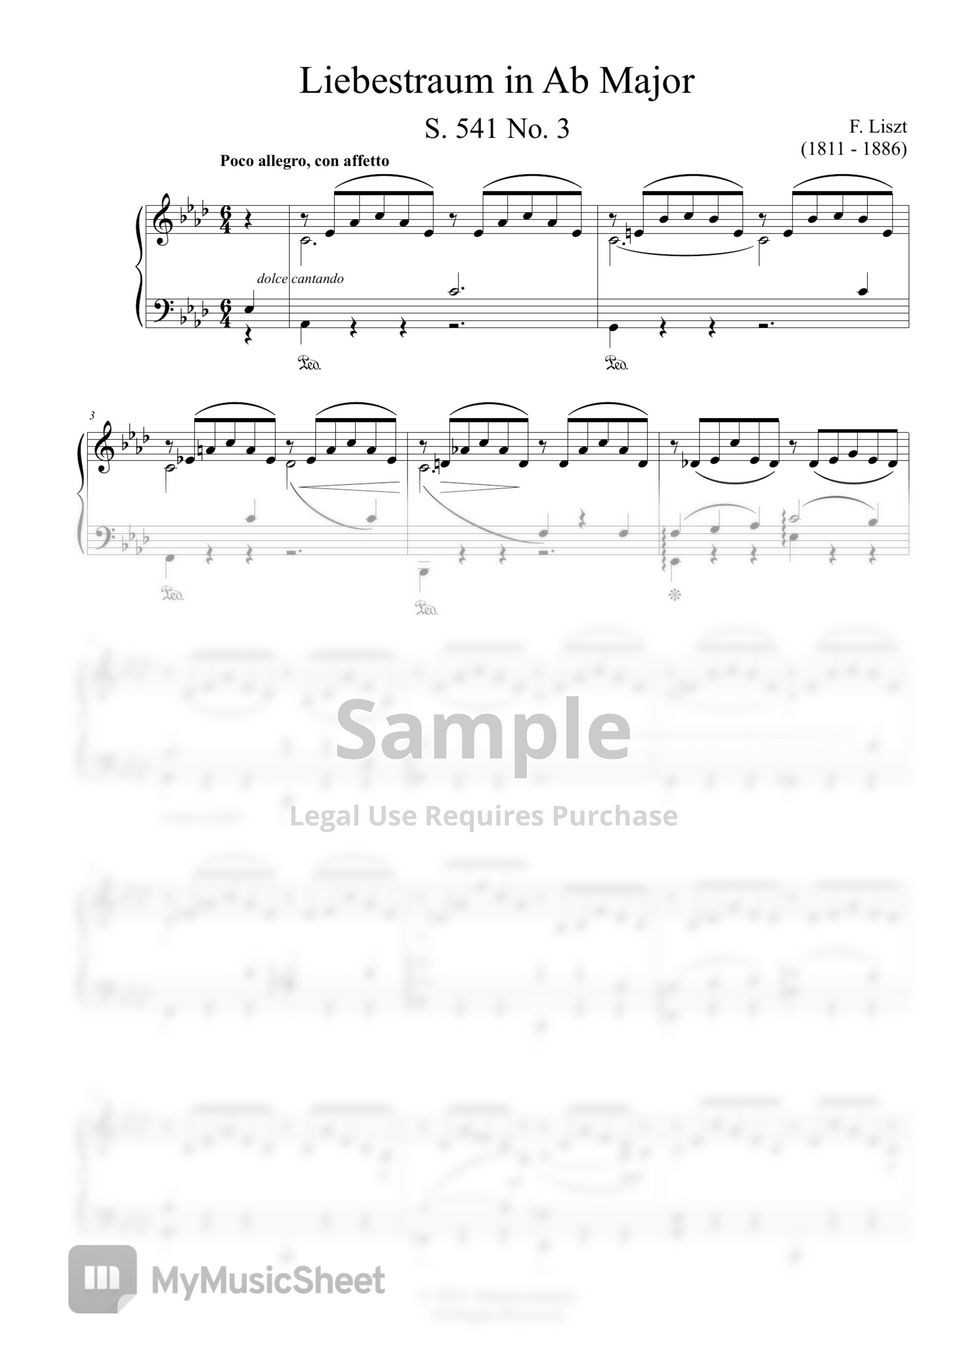 F. Liszt - Liebestraum No.3 by MyMusicSheet Official